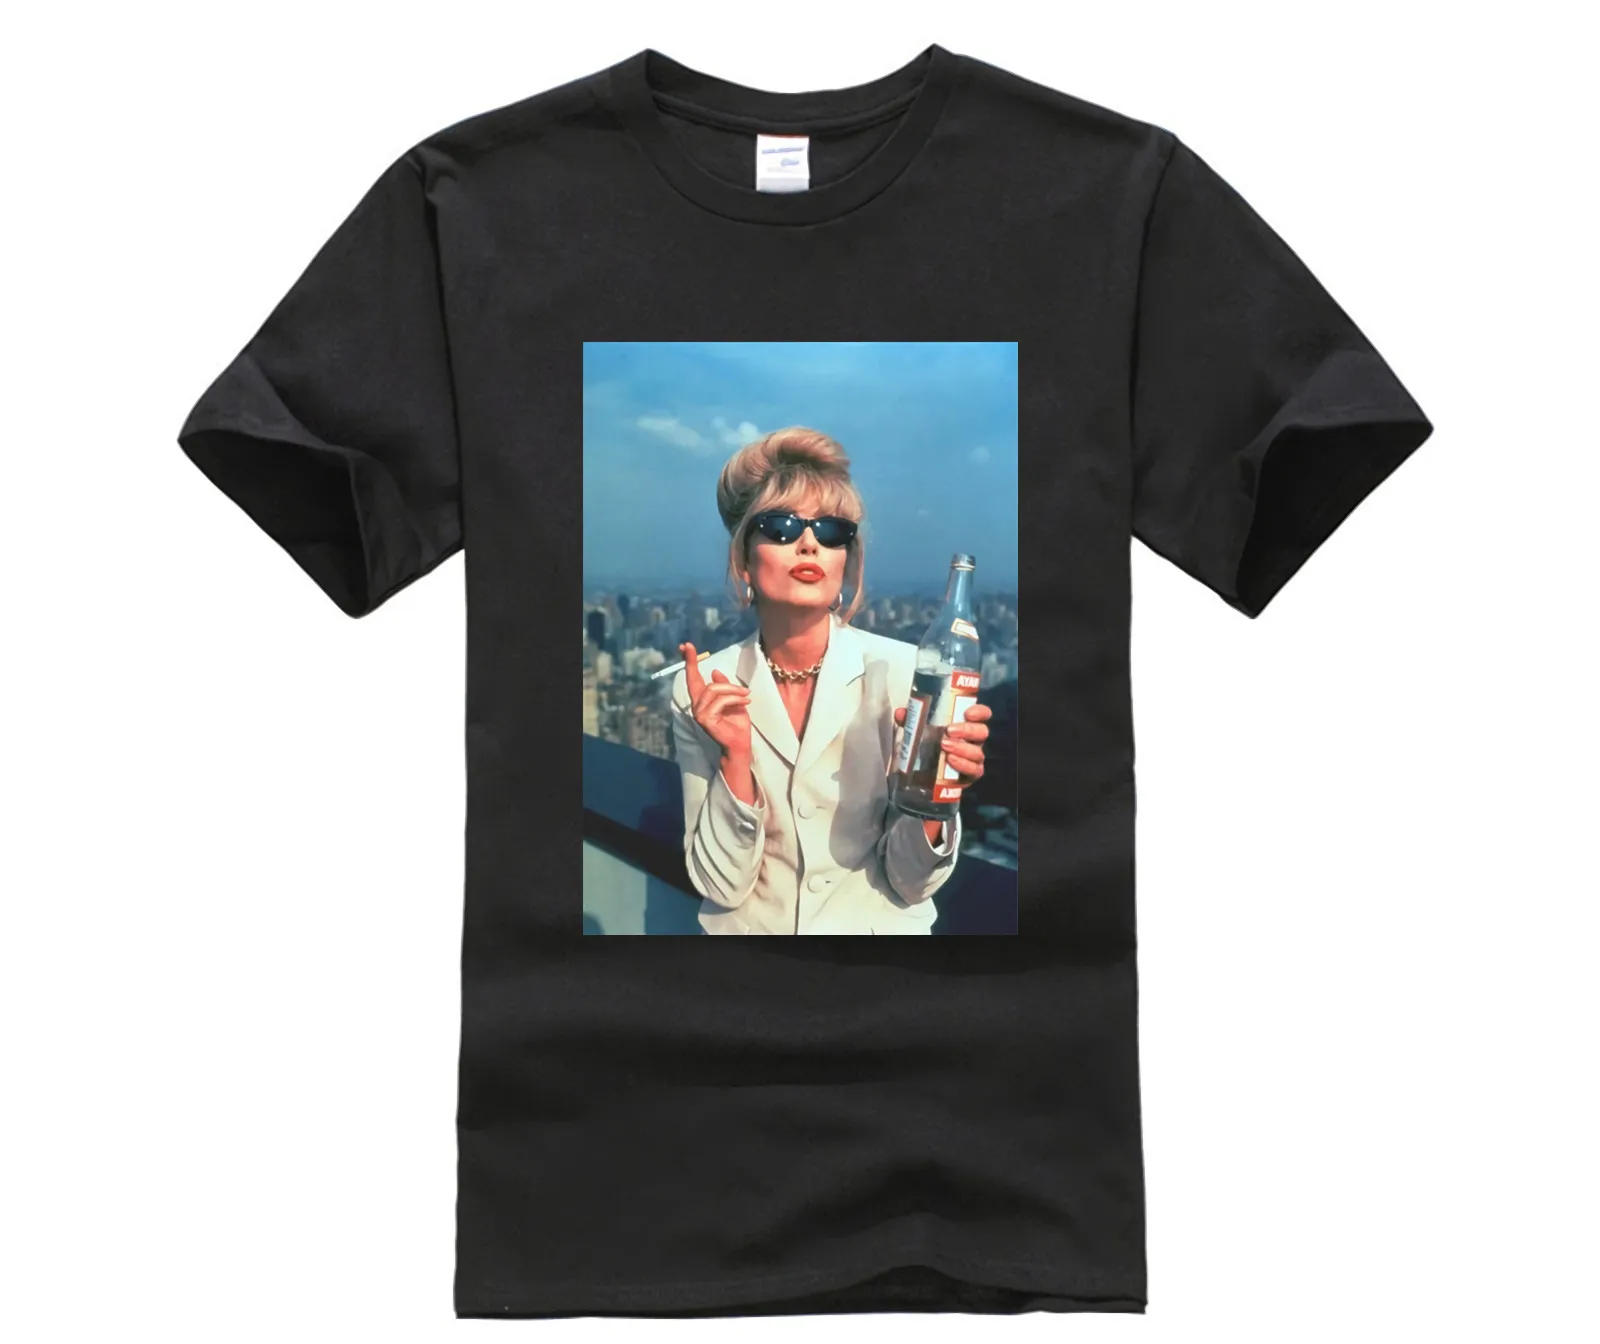 Потрясающая модная футболка Patsy модные футболки ЛГБТ с водкой и спиртом|Футболки|